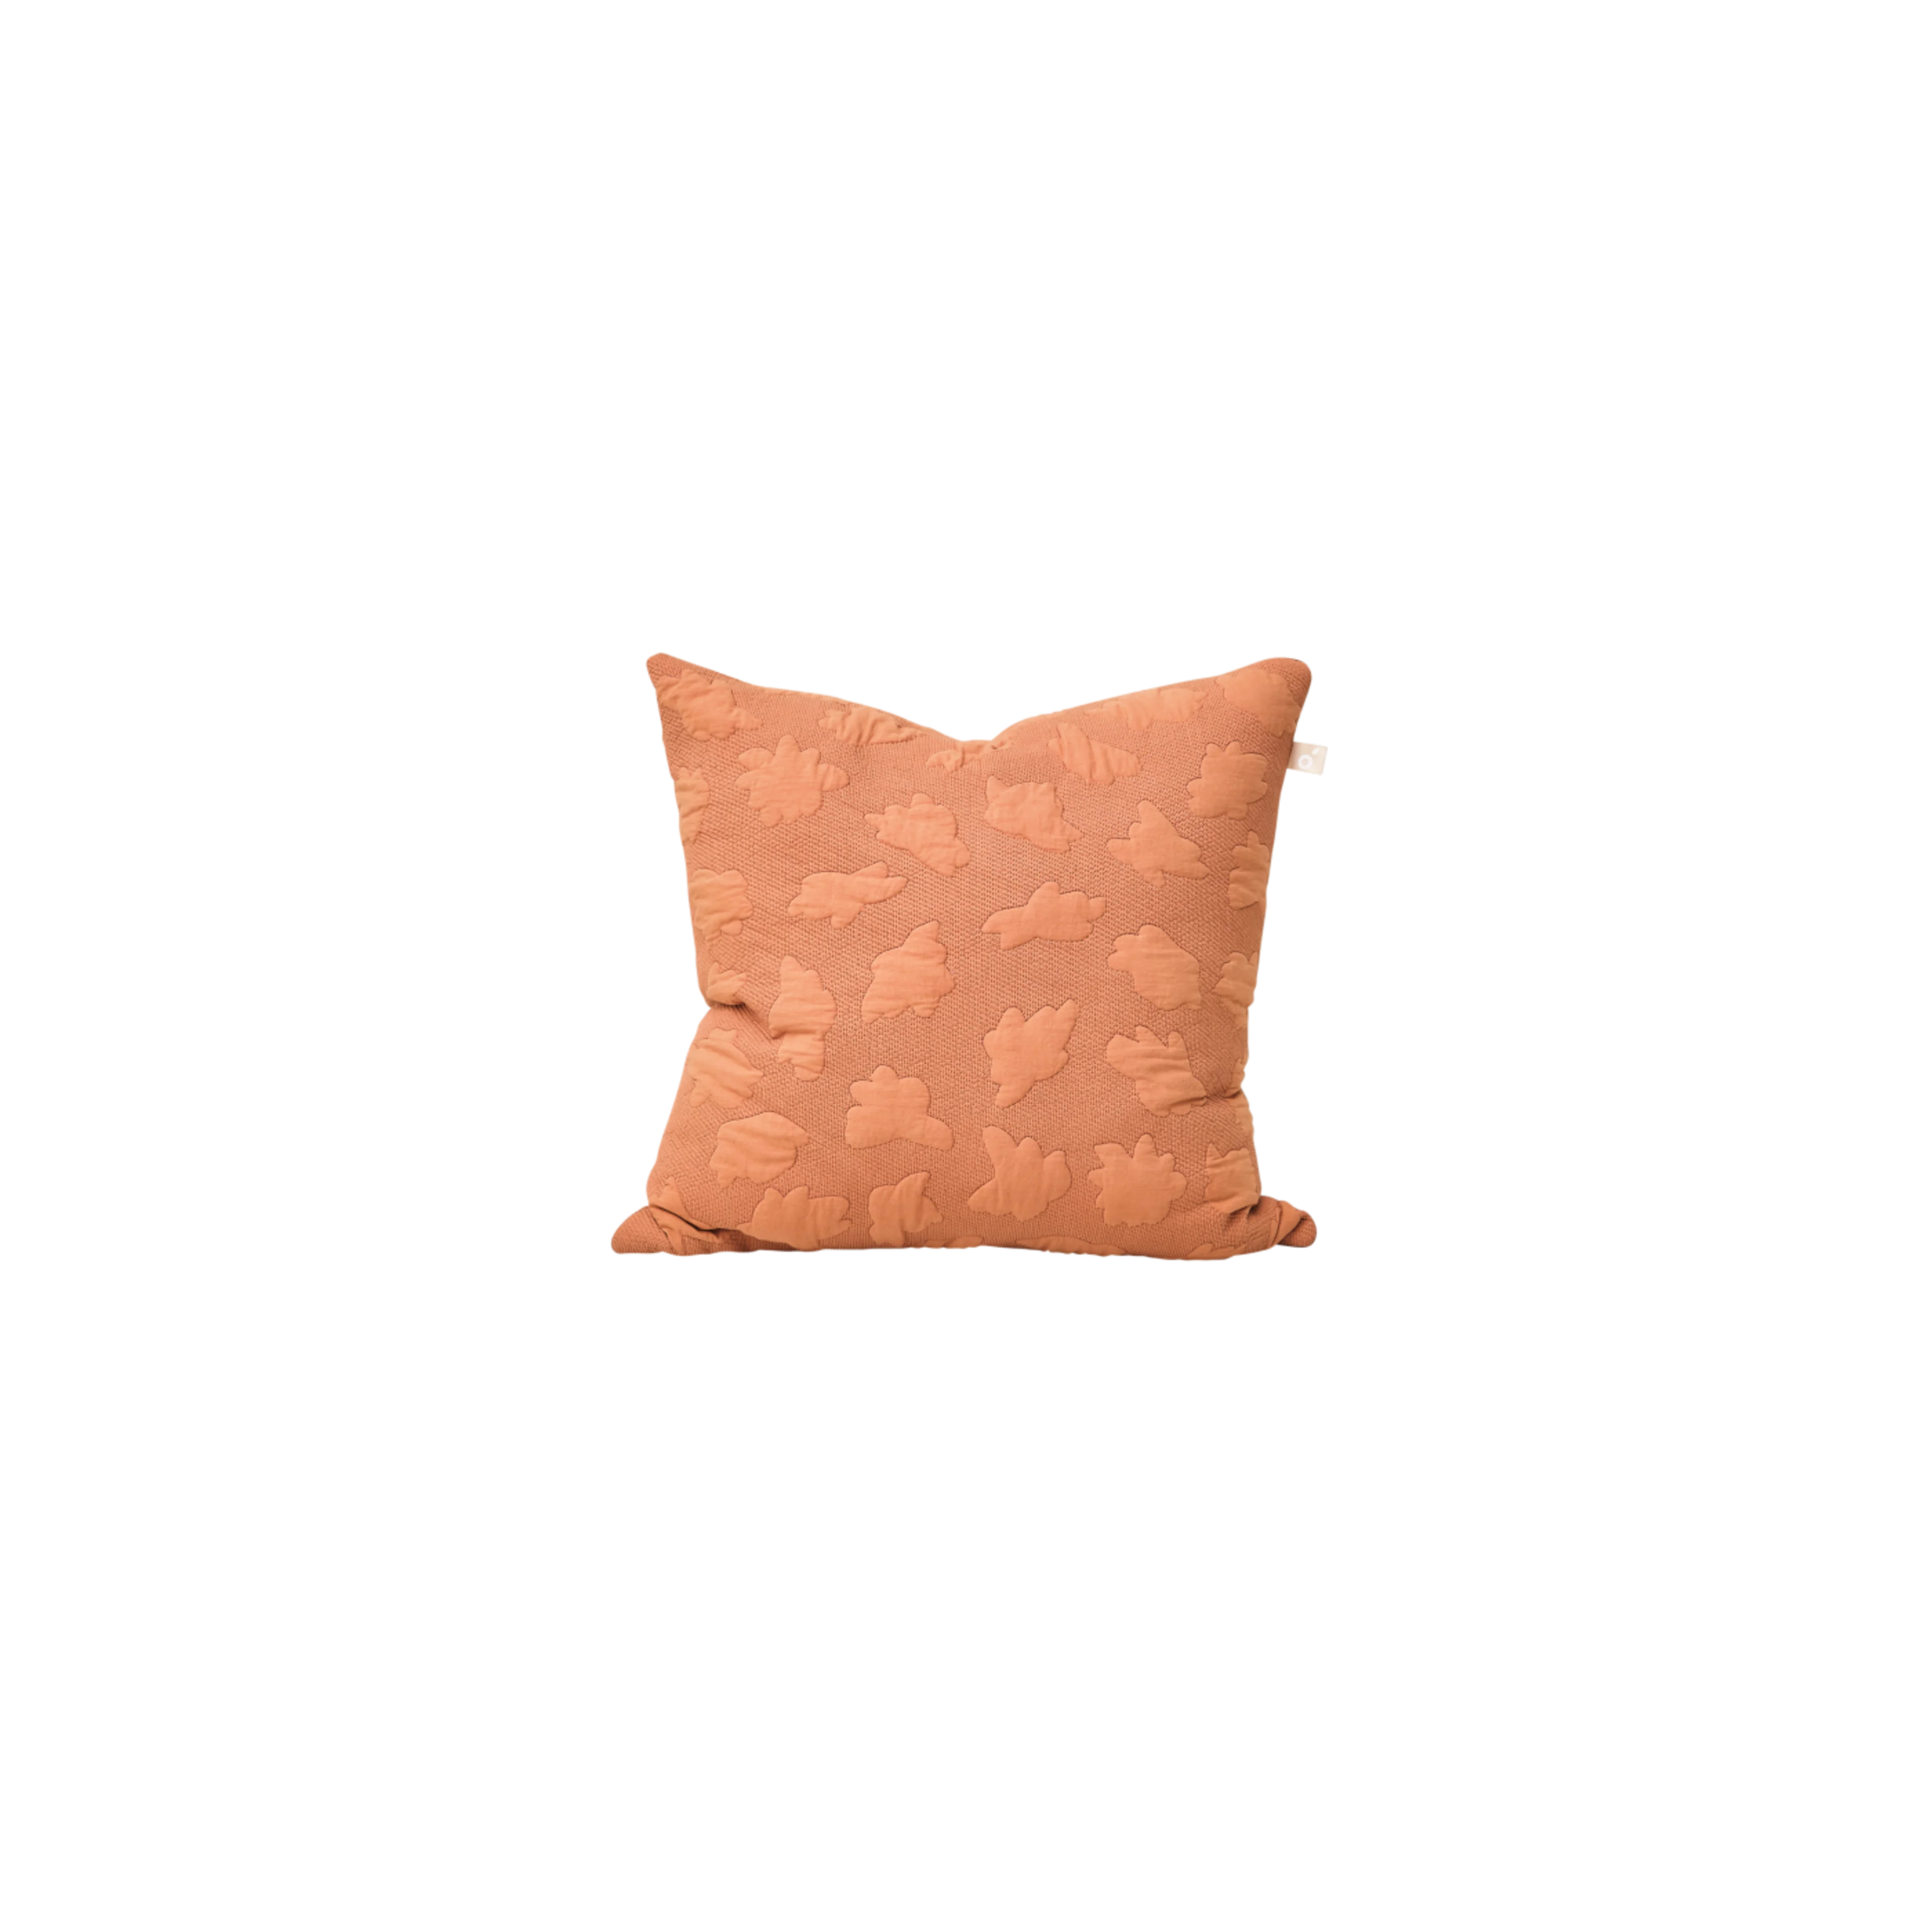 AU > Product Ivory BG > Daydreamer Cushion 50 x 50cm Nullarbor